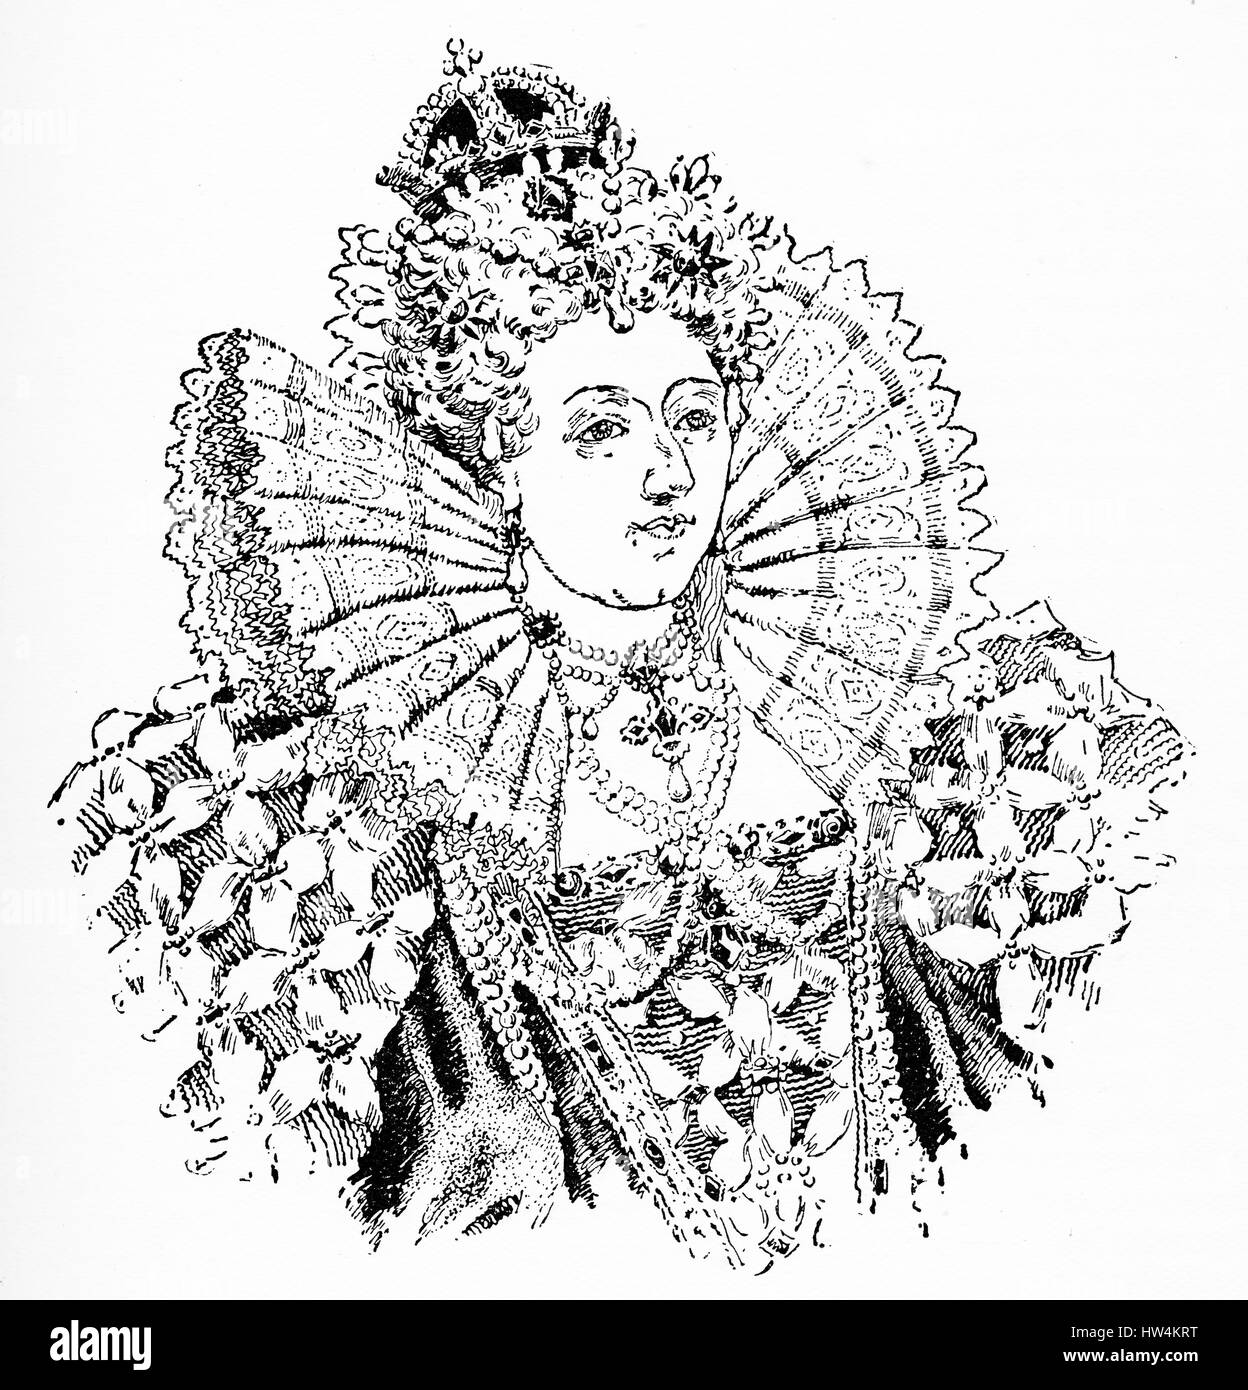 Kupferstich von Elisabeth i., Königin von England. (1533 - 1603) aus einer ursprünglichen Gravur in der Historiker Weltgeschichte, 1908 Stockfoto